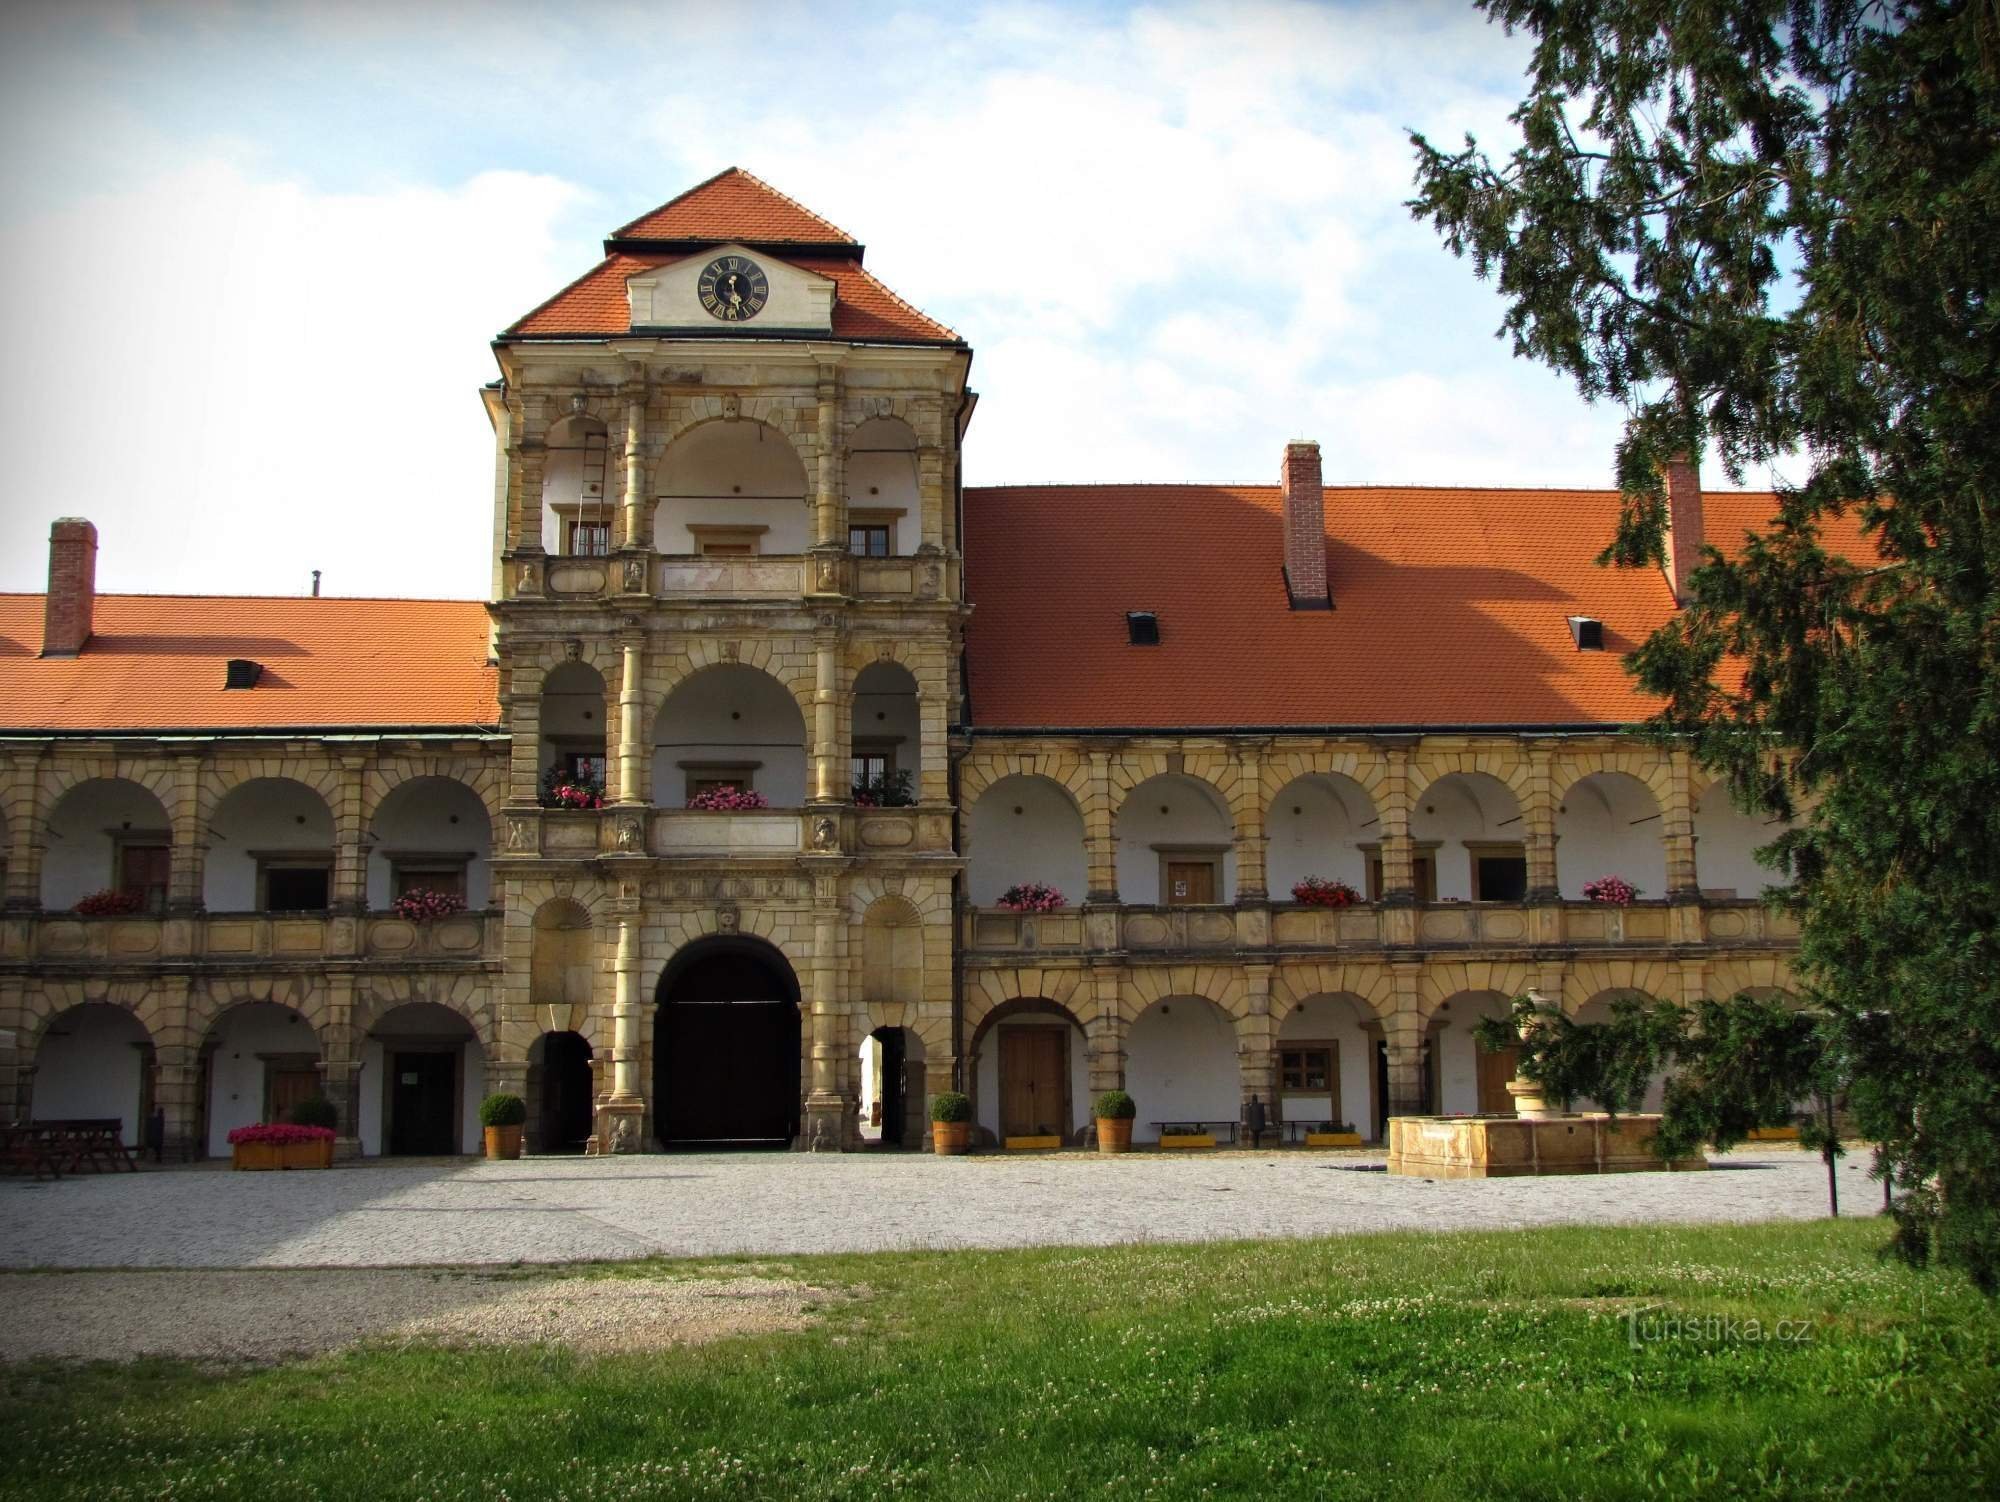 Los terrenos del castillo en Moravská Třebová